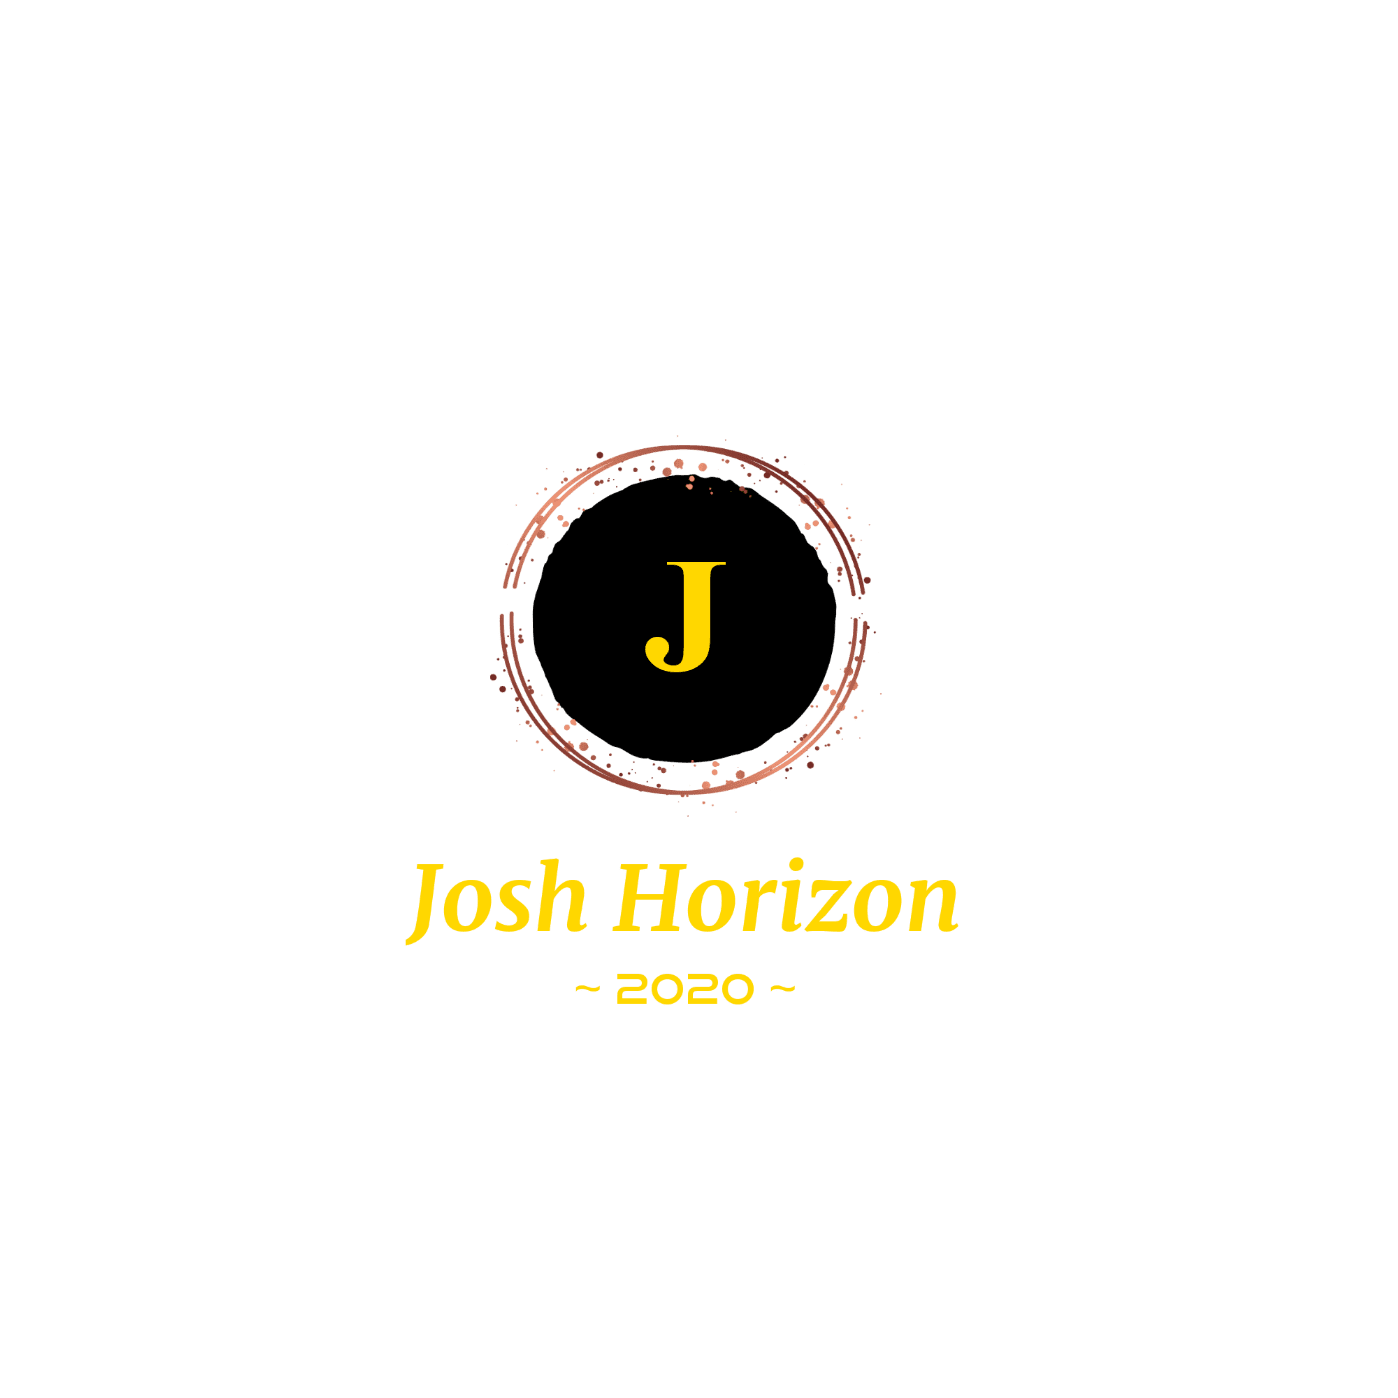 Josh Horizon